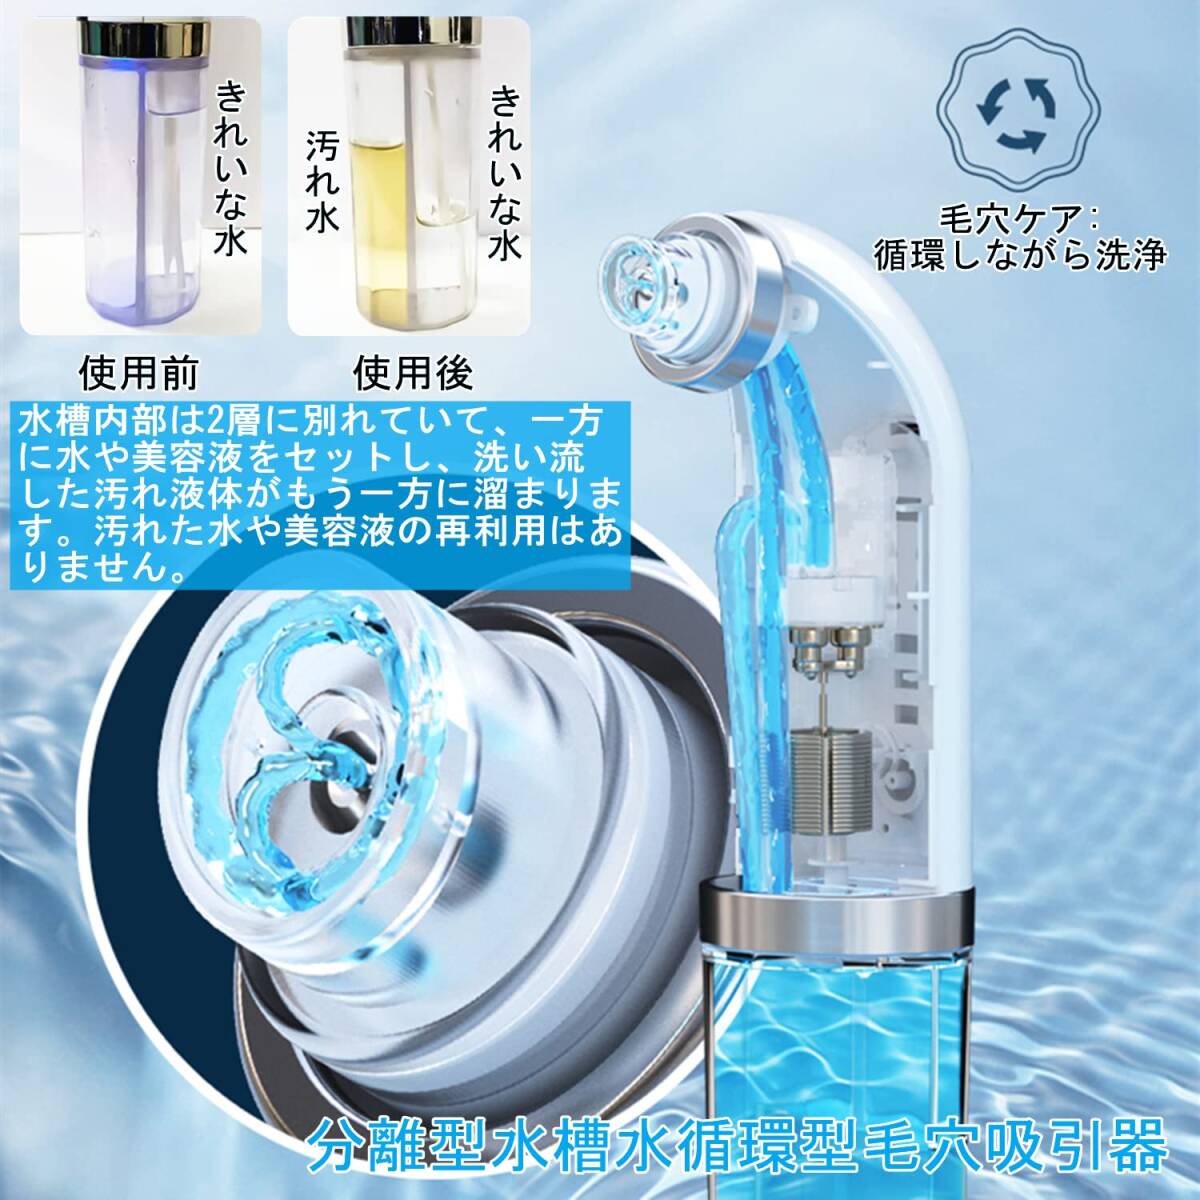  рекомендация * шерсть дыра аспиратор вакуум всасывание технология вода . тип долговечность выдающийся compact дизайн 